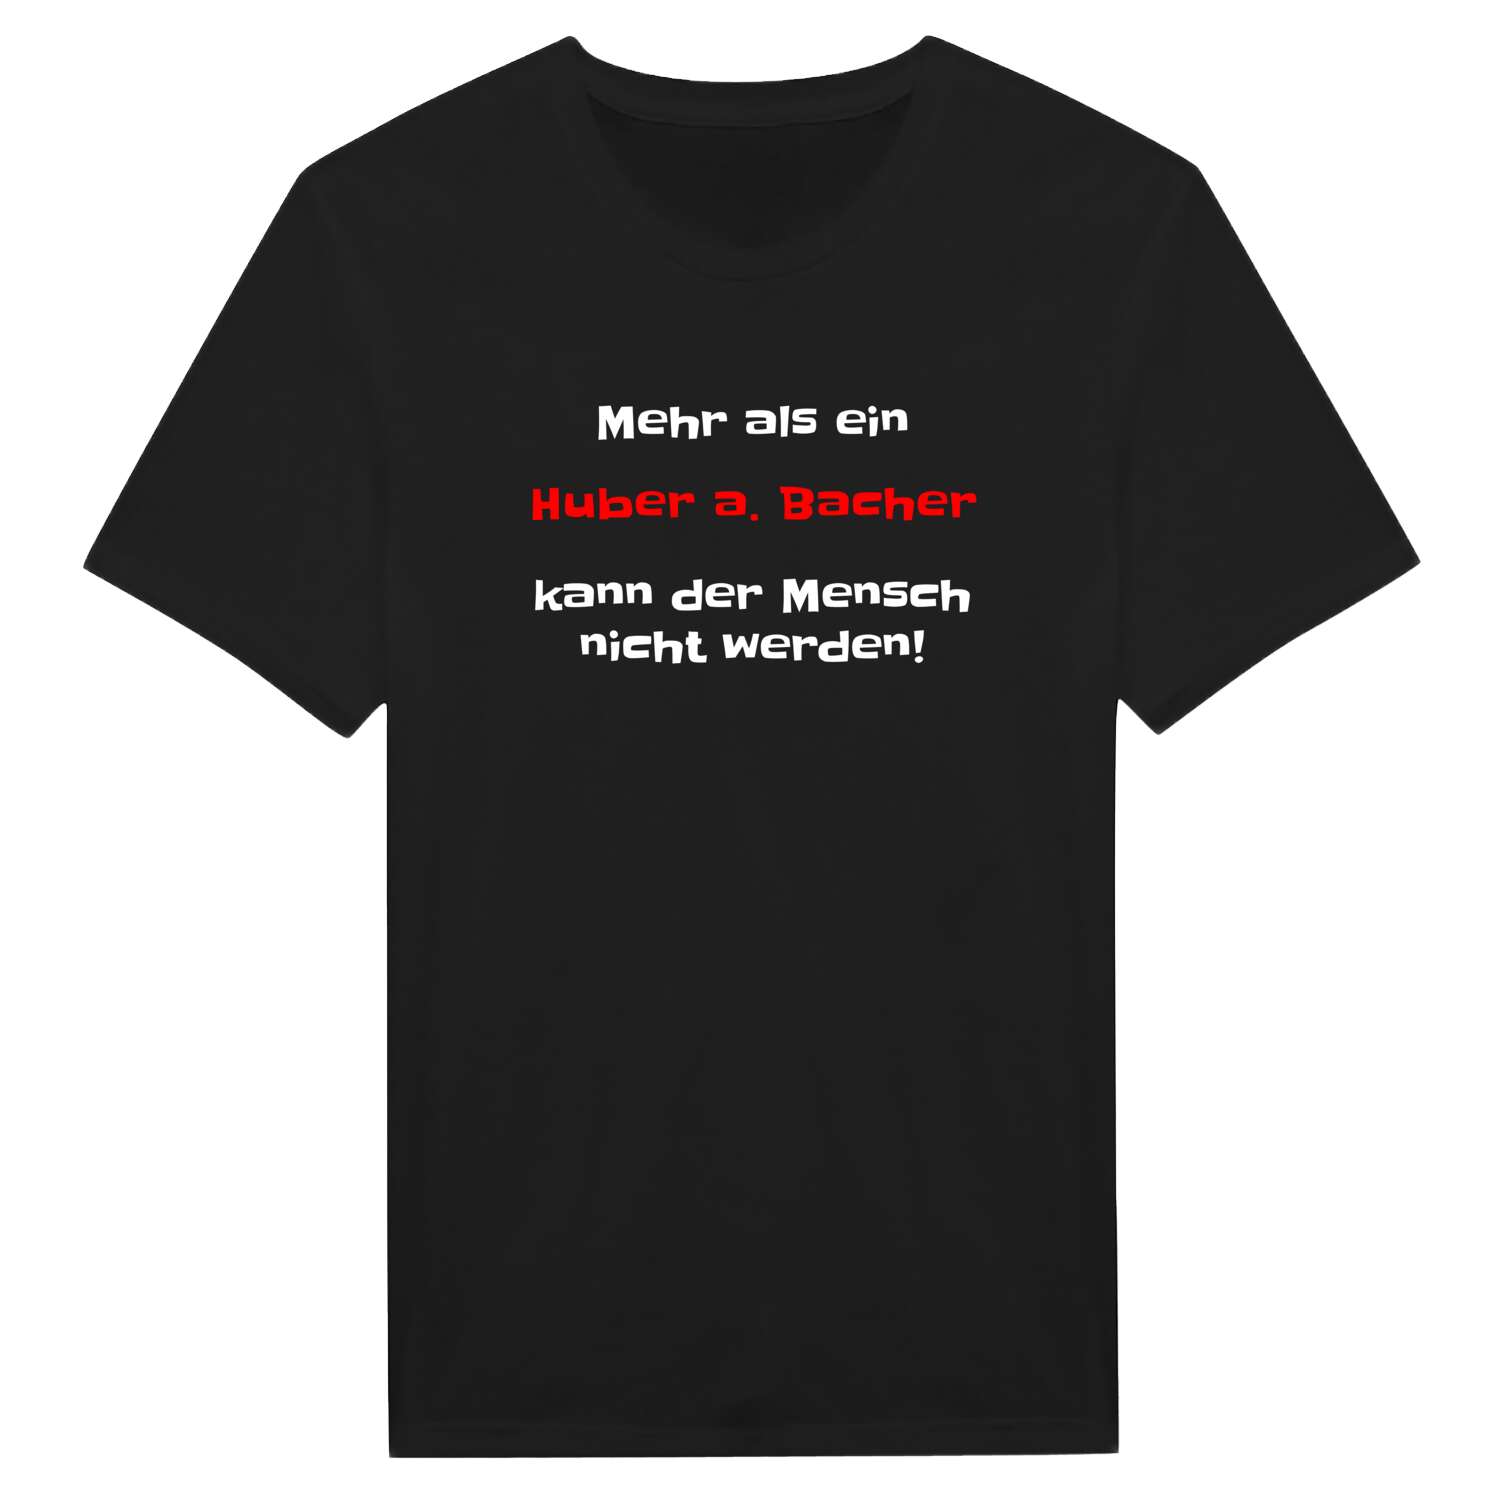 Huber a. Bach T-Shirt »Mehr als ein«